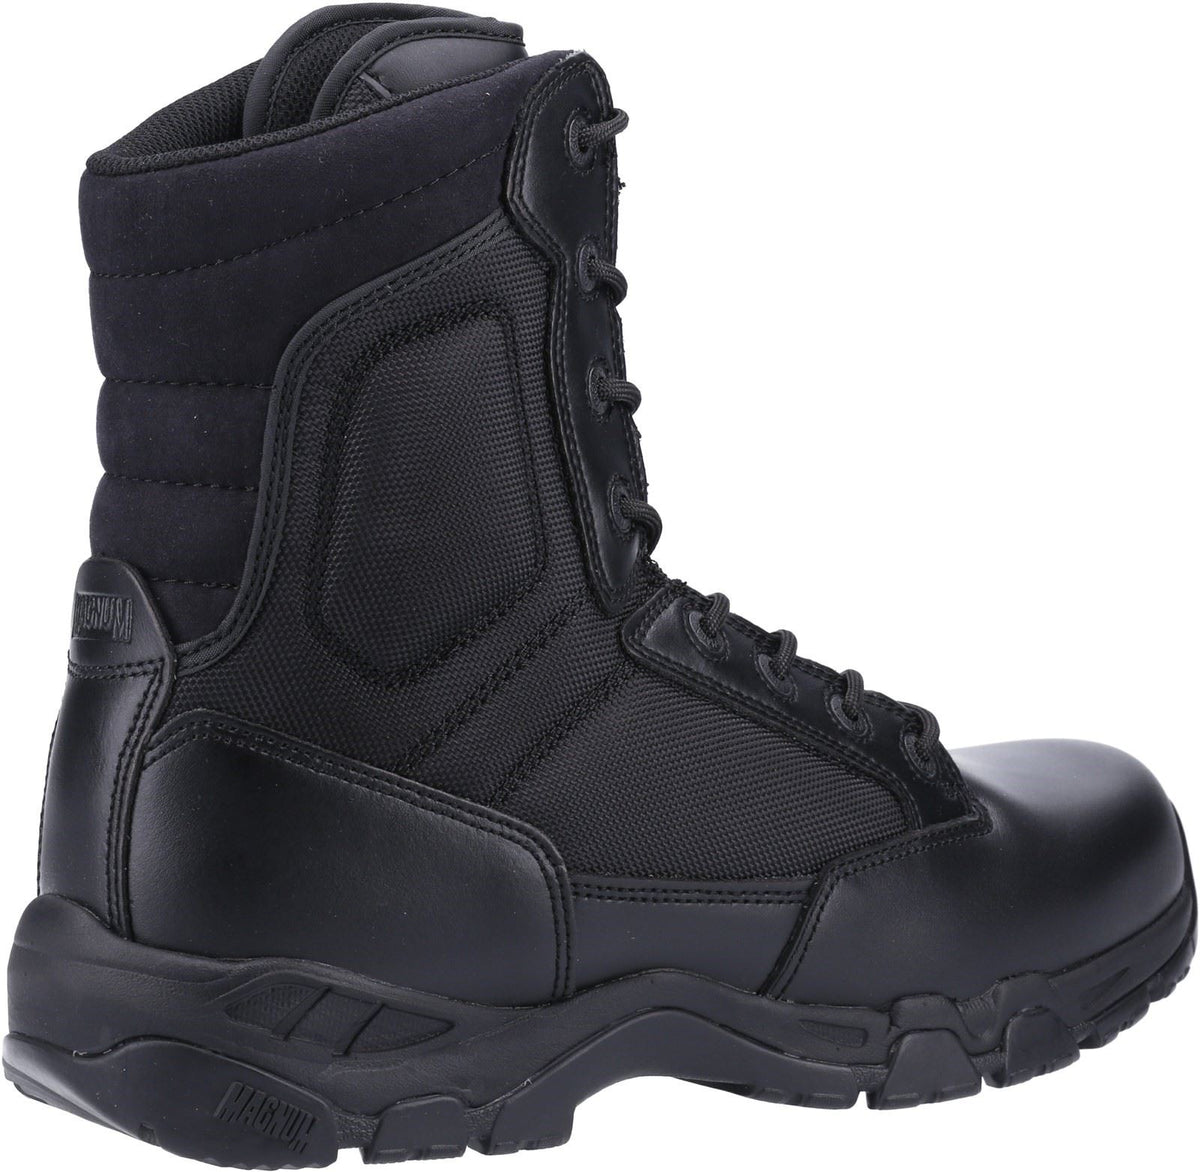 Magnum Viper Pro 8.0 Plus Uniform Safety Boots